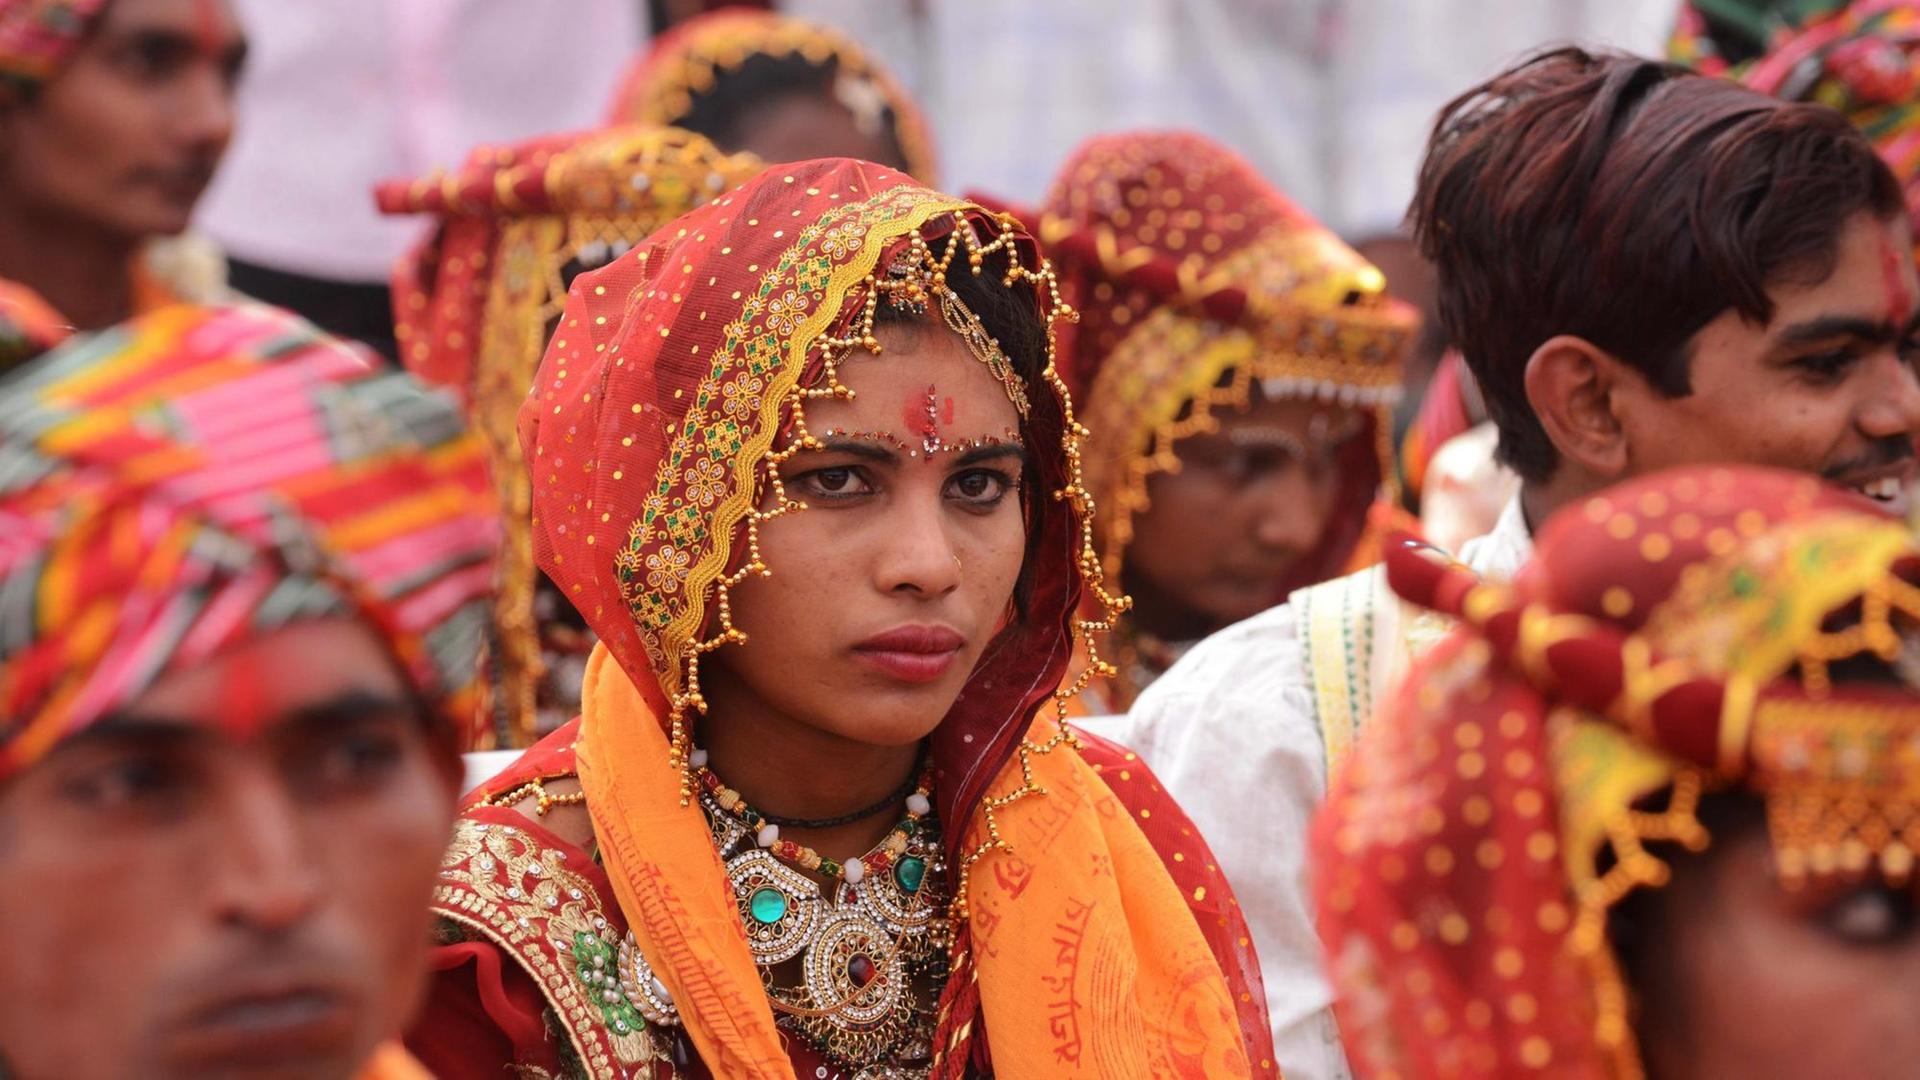 Eine junge indische Braut steht während einer Massenhochzeit zwischen anderen Frauen und Männern.